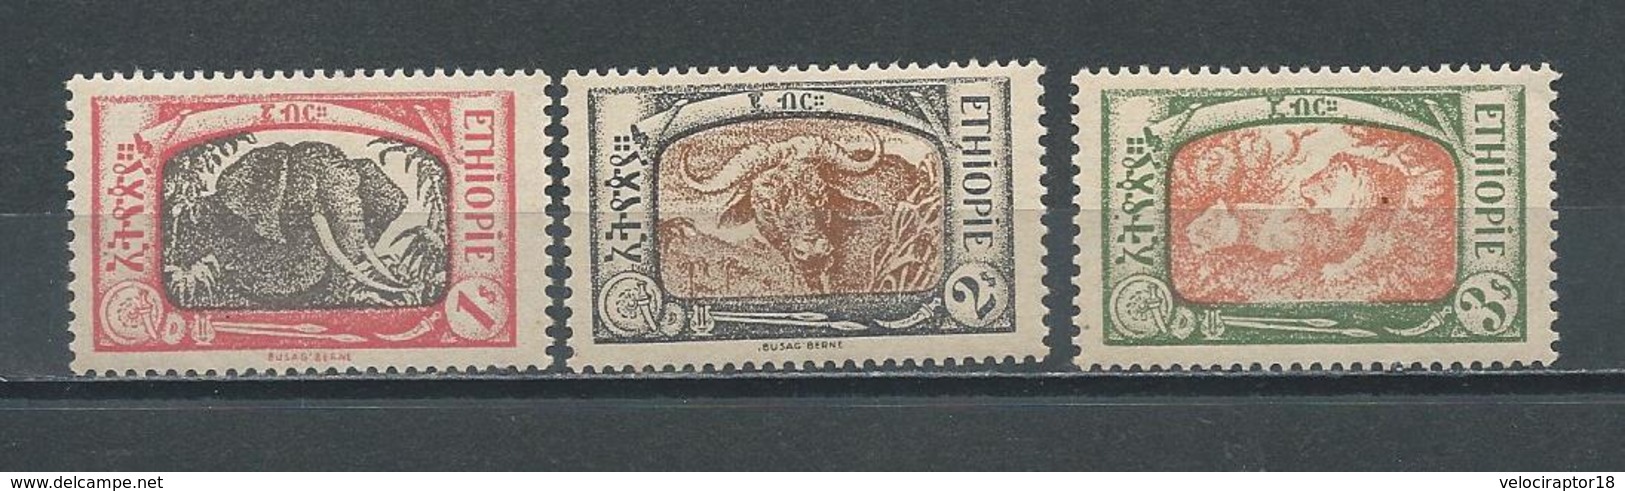 ETHIOPIE - ANIMAUX DE 1919 NEUF * (306) - Ethiopie